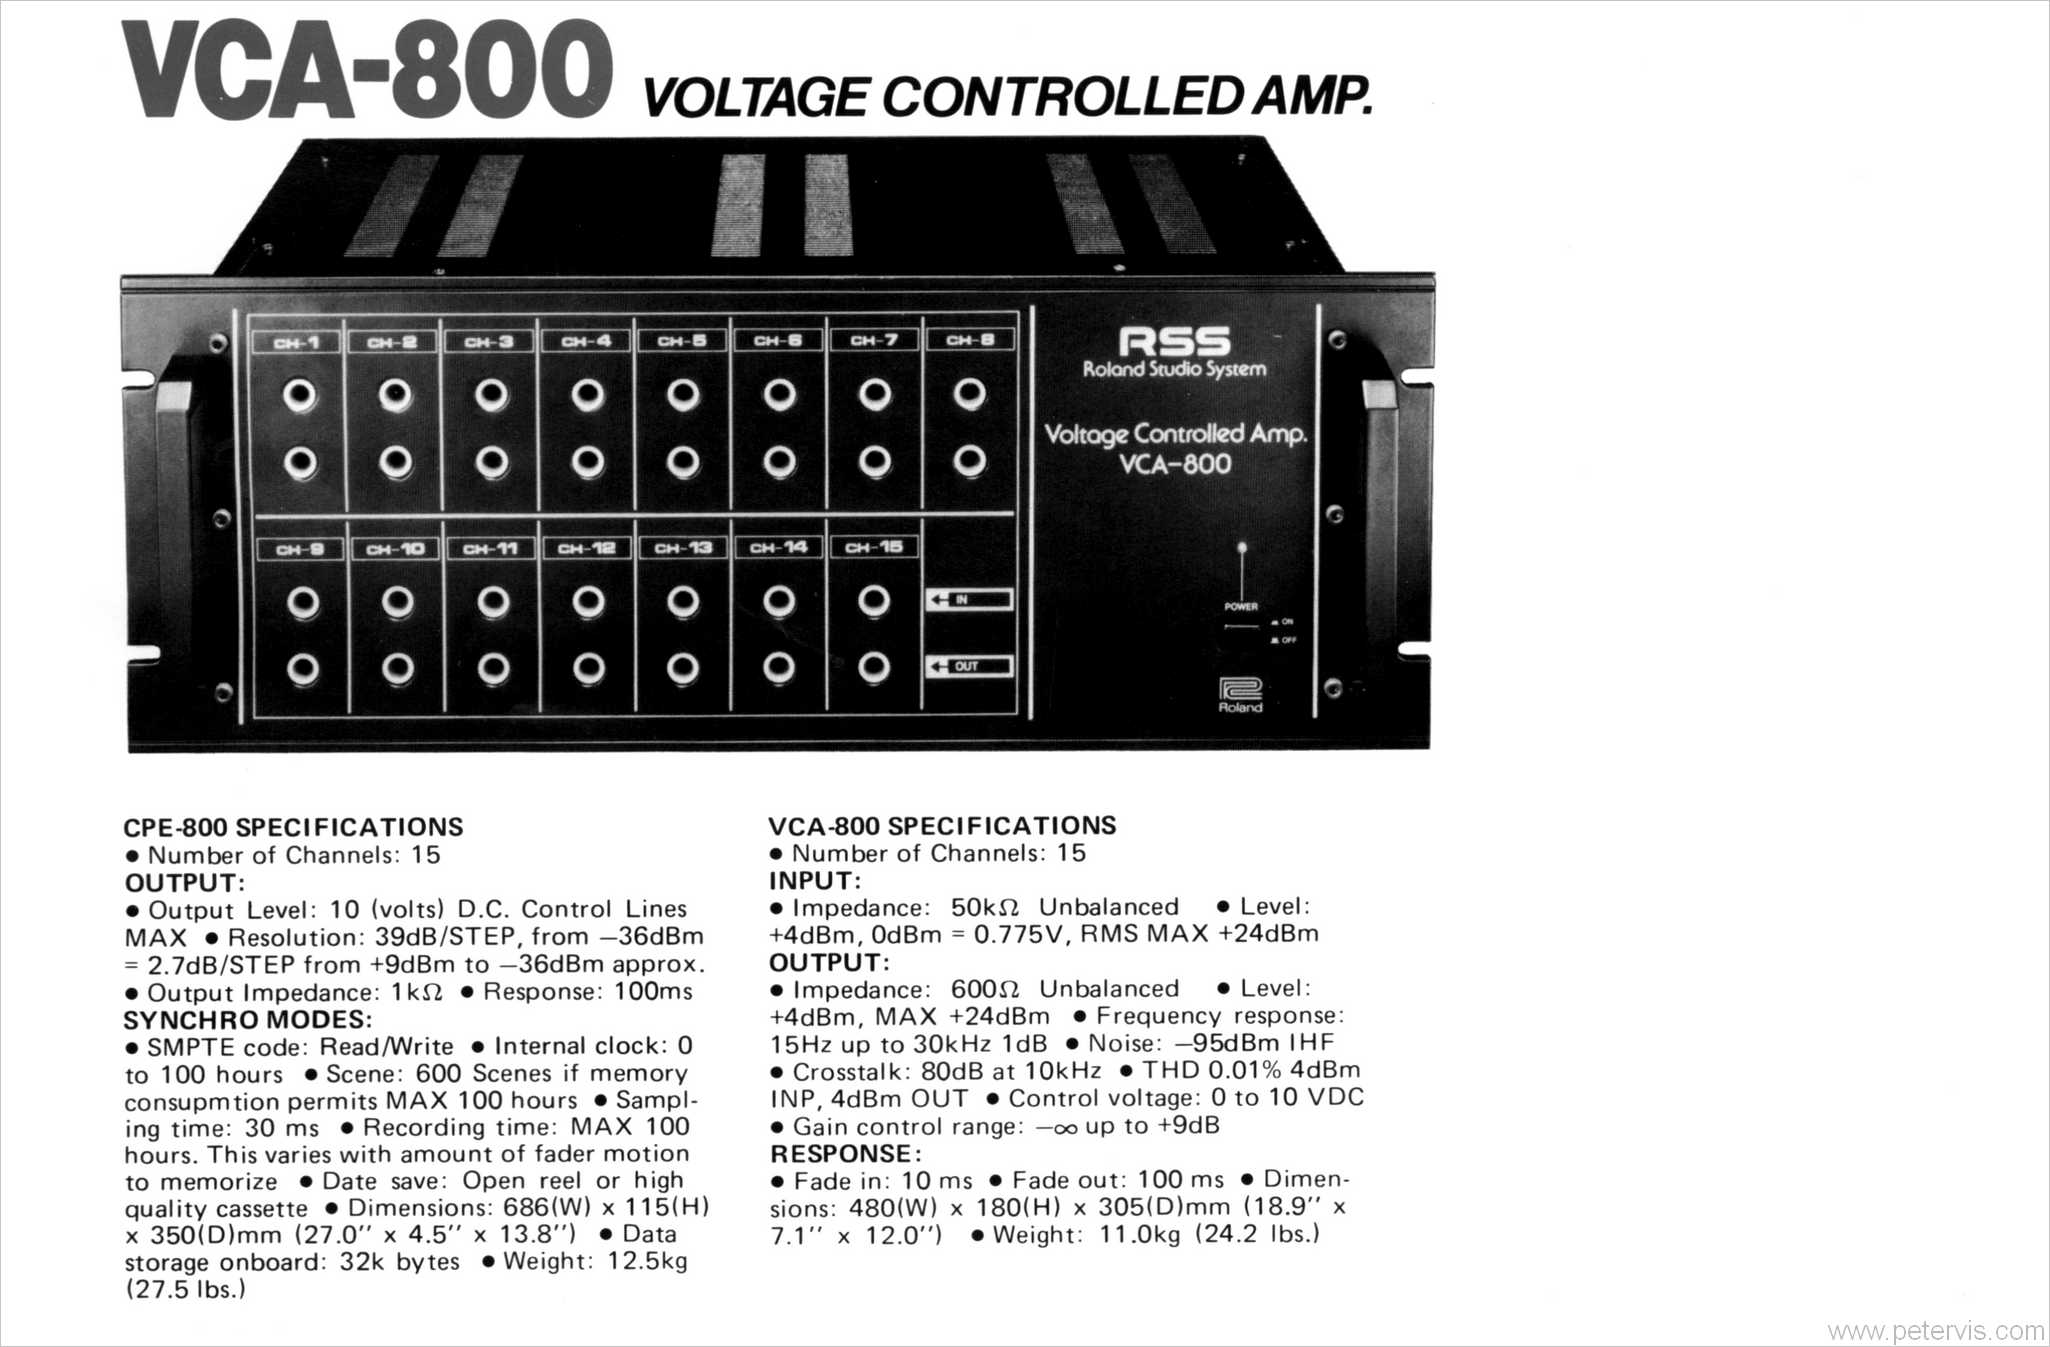 VCA-800